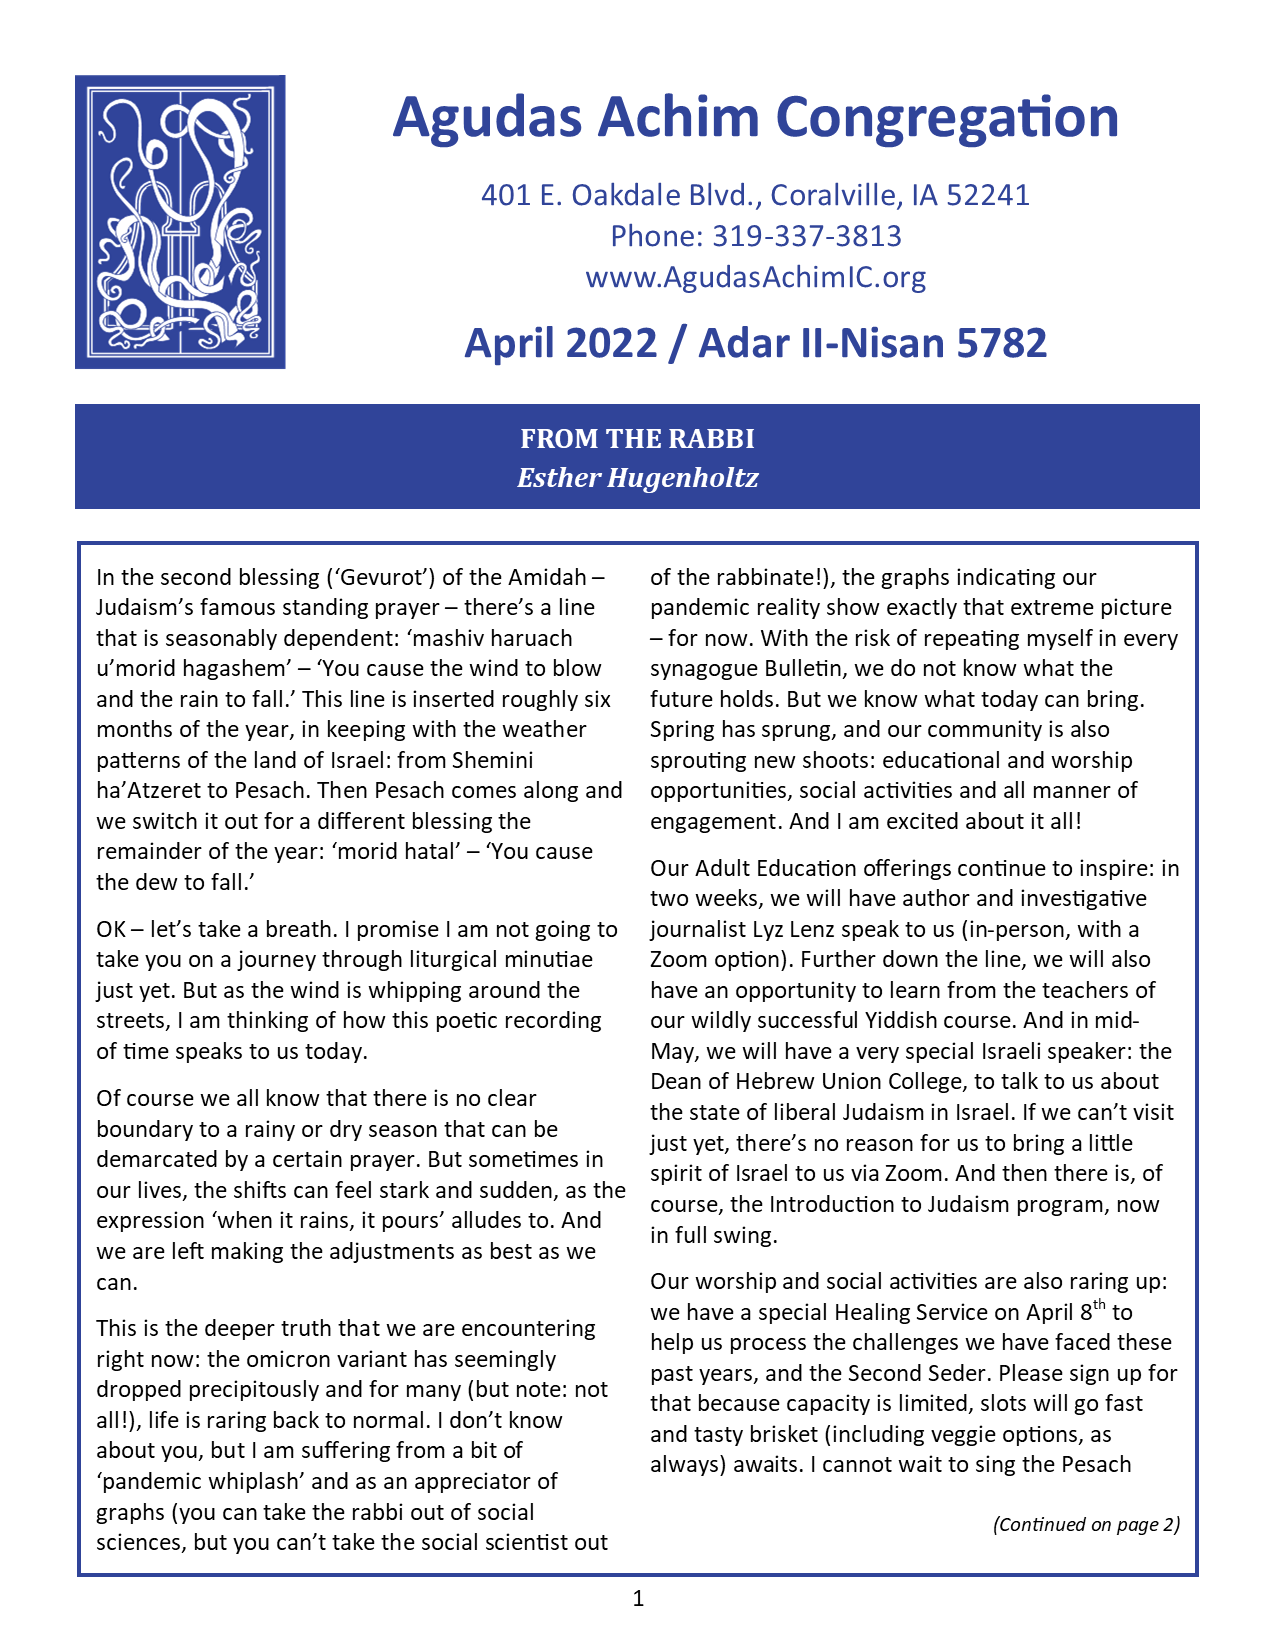 April 2022 Bulletin Cover